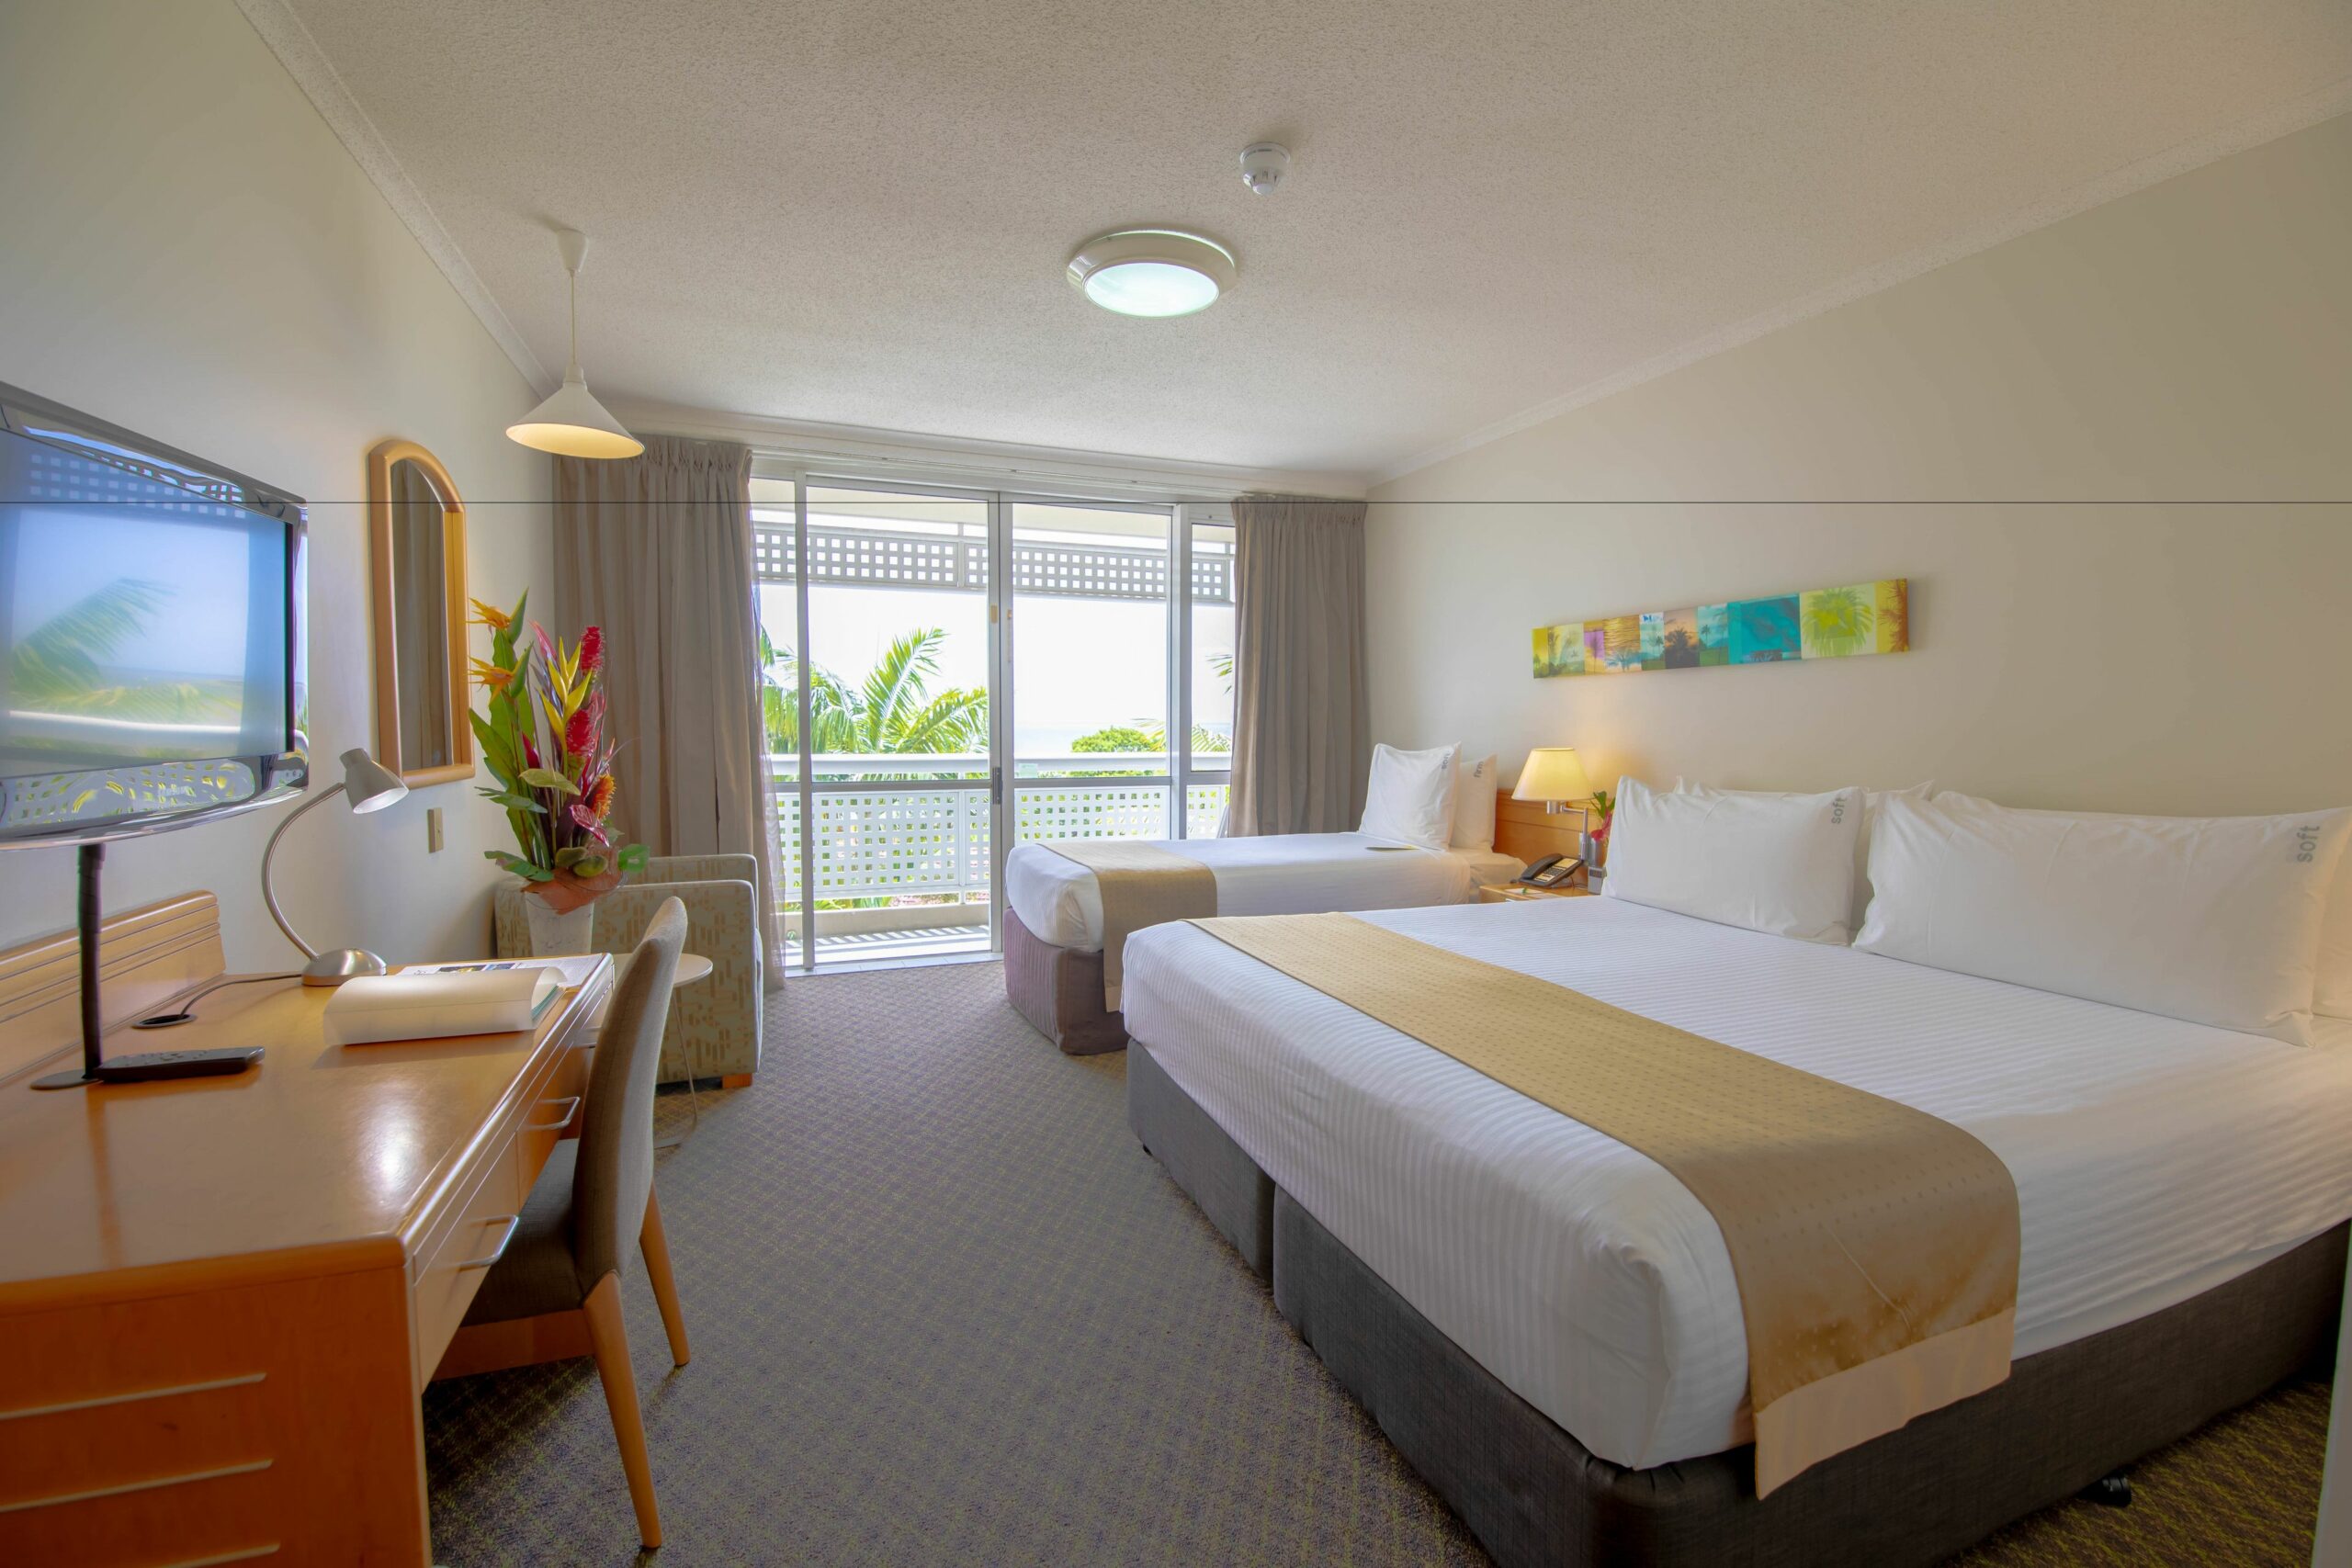 Holiday Inn Cairns Harbourside